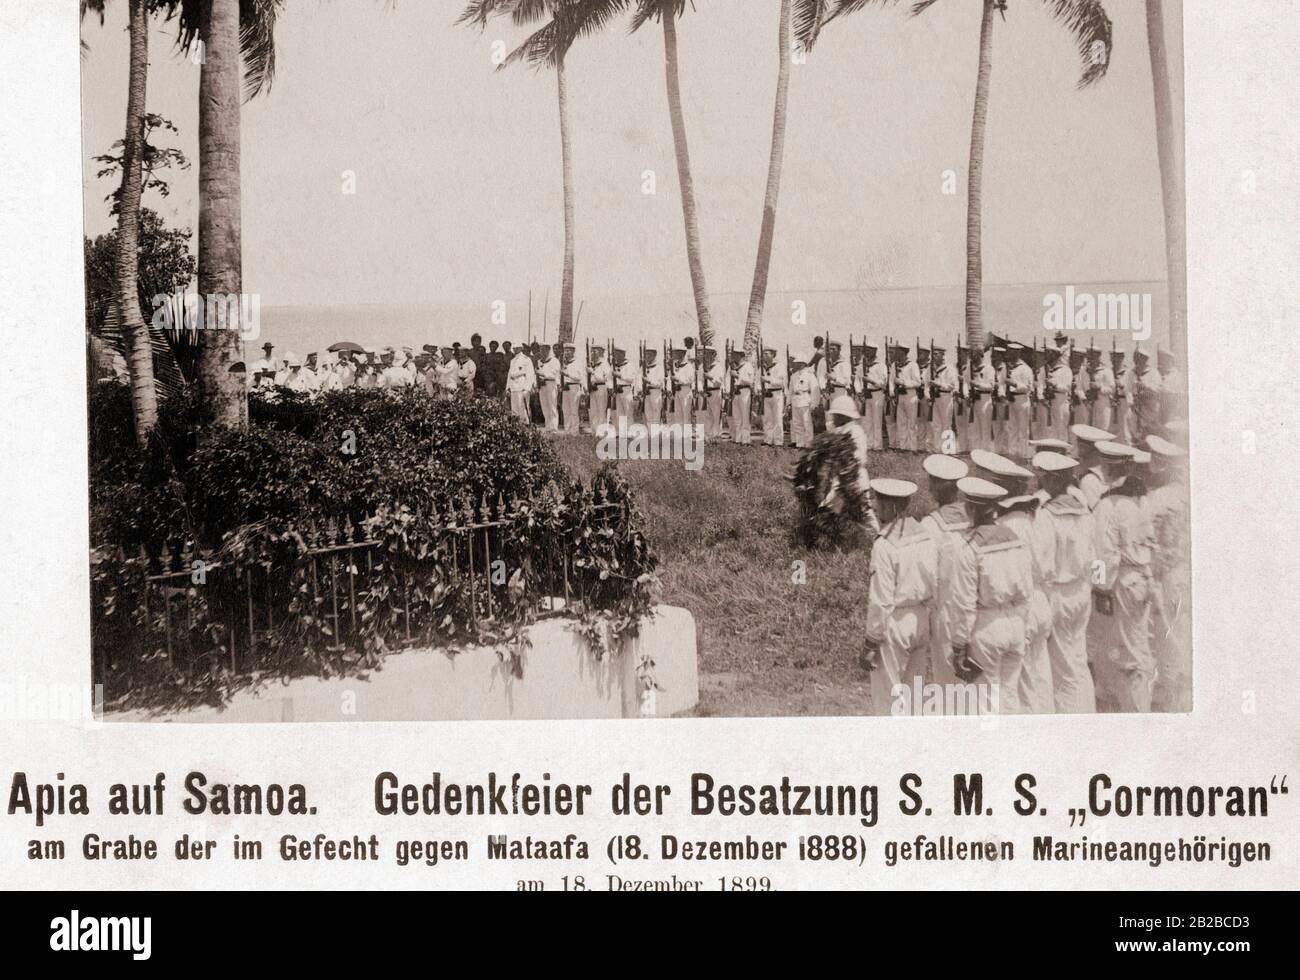 Commemorazione dell'equipaggio della S.M.S 'Cormoran' presso la tomba dei membri della marina che morì nella battaglia contro il capo della tribù e leader degli abitanti di Samoa il 18.12.1888 ad Apia. Foto Stock